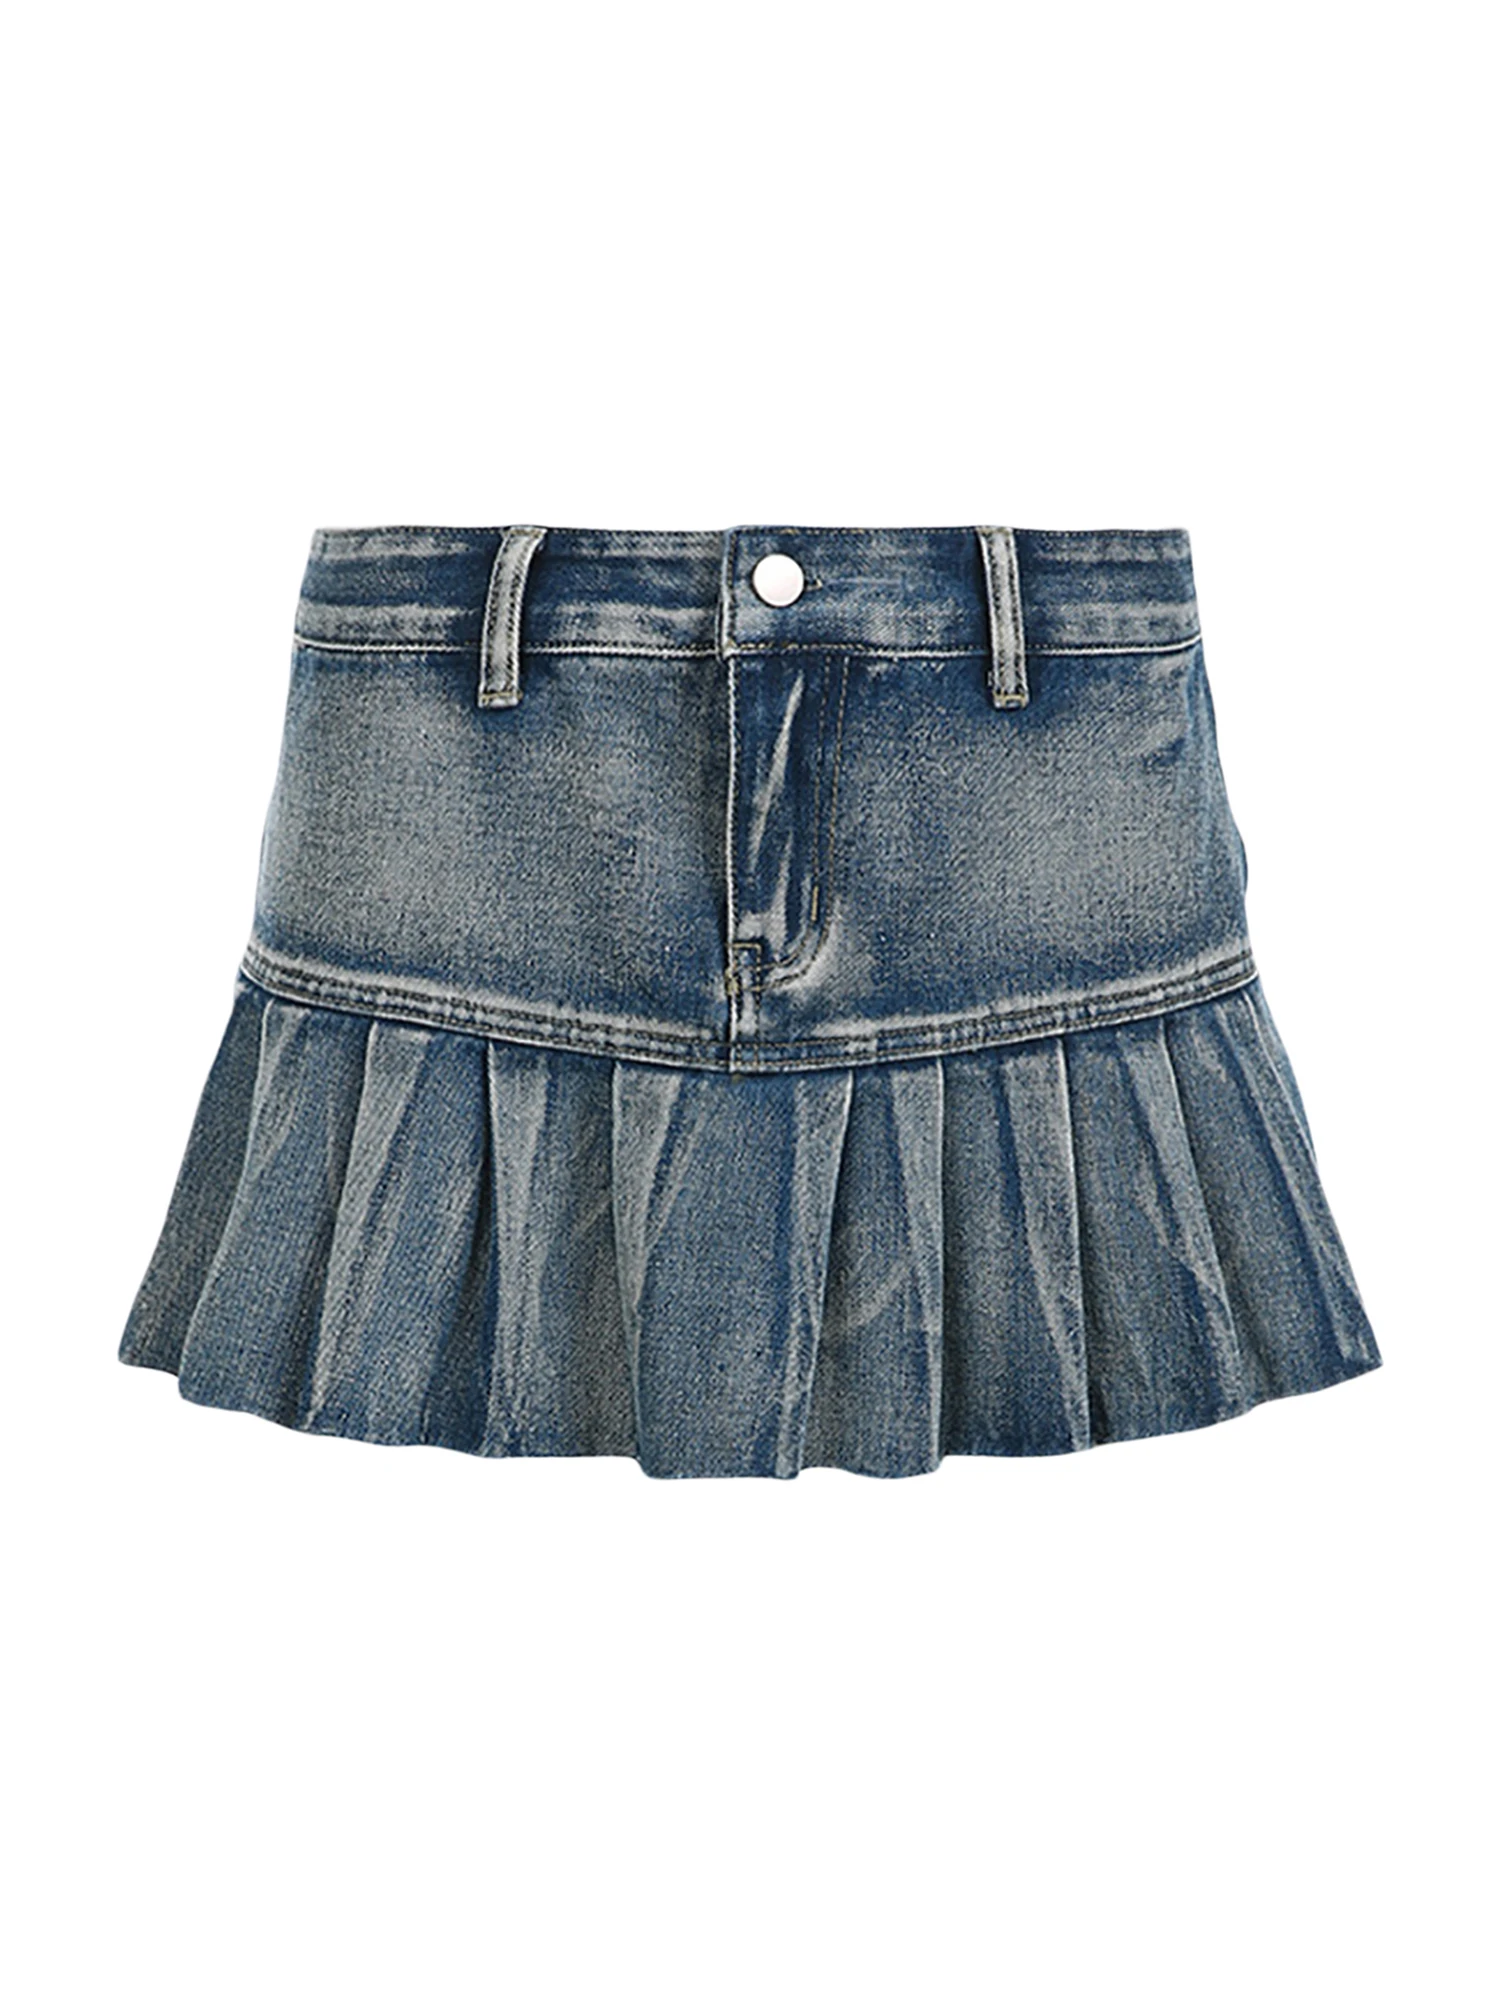 

BEAFNKSG Women s Mini Jean Skirts Fashion Low Waist Pleated Denim Skirts Short Flared Skirts Streetwear (Blue M)